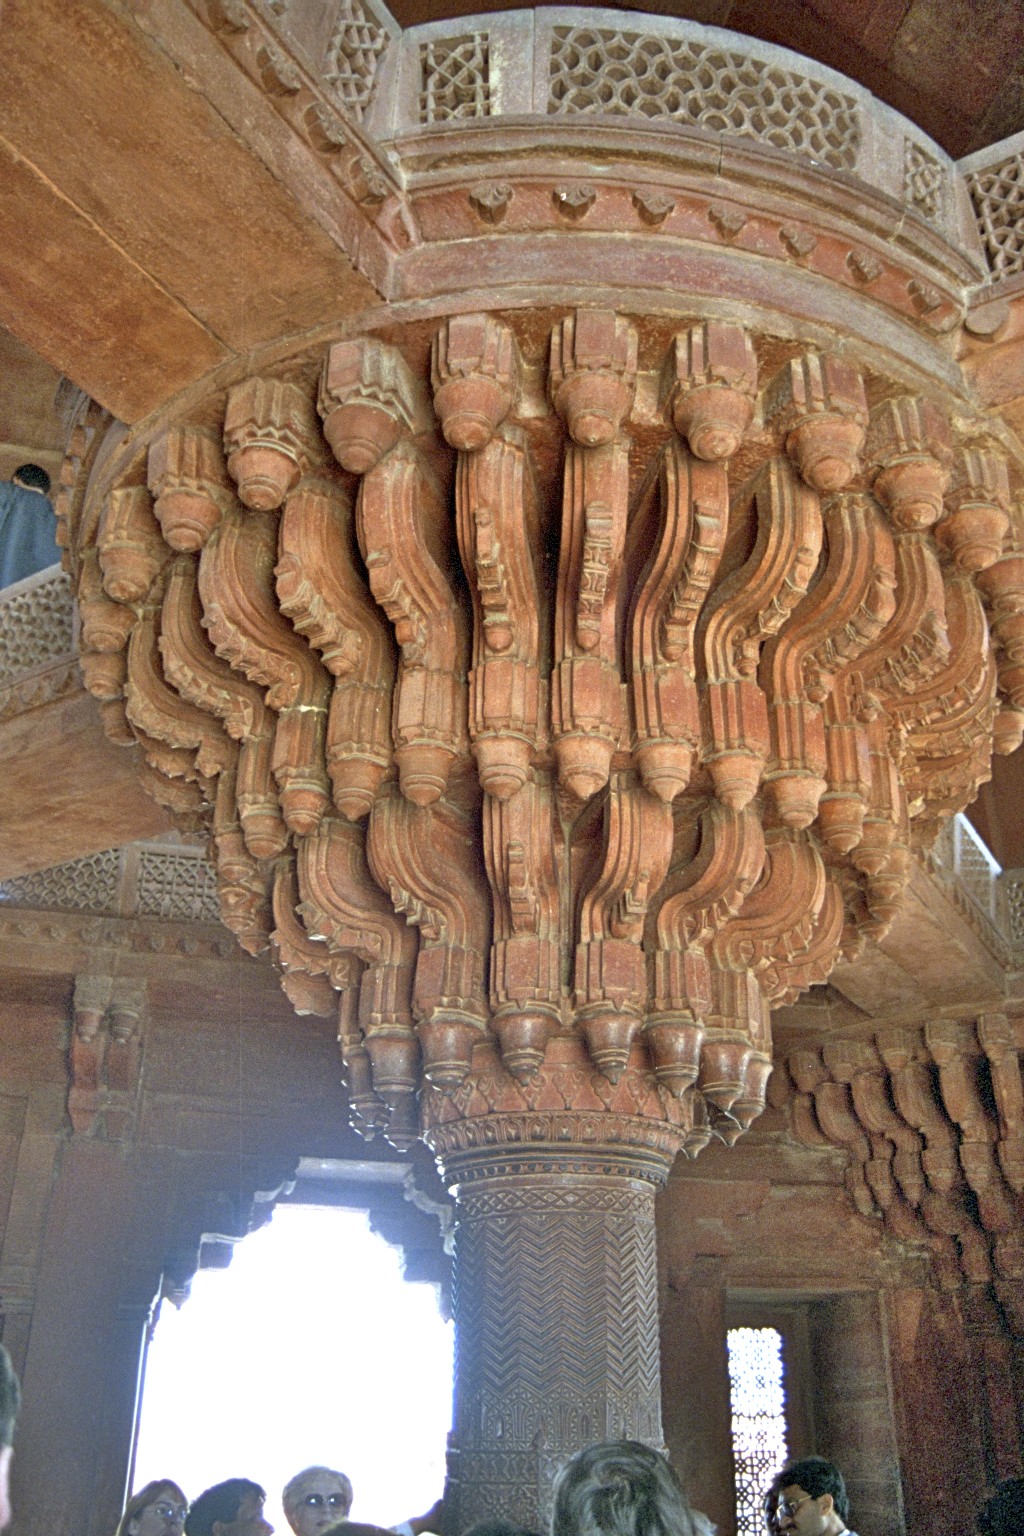 Diwan I Khas, Fatepur Sikri 2